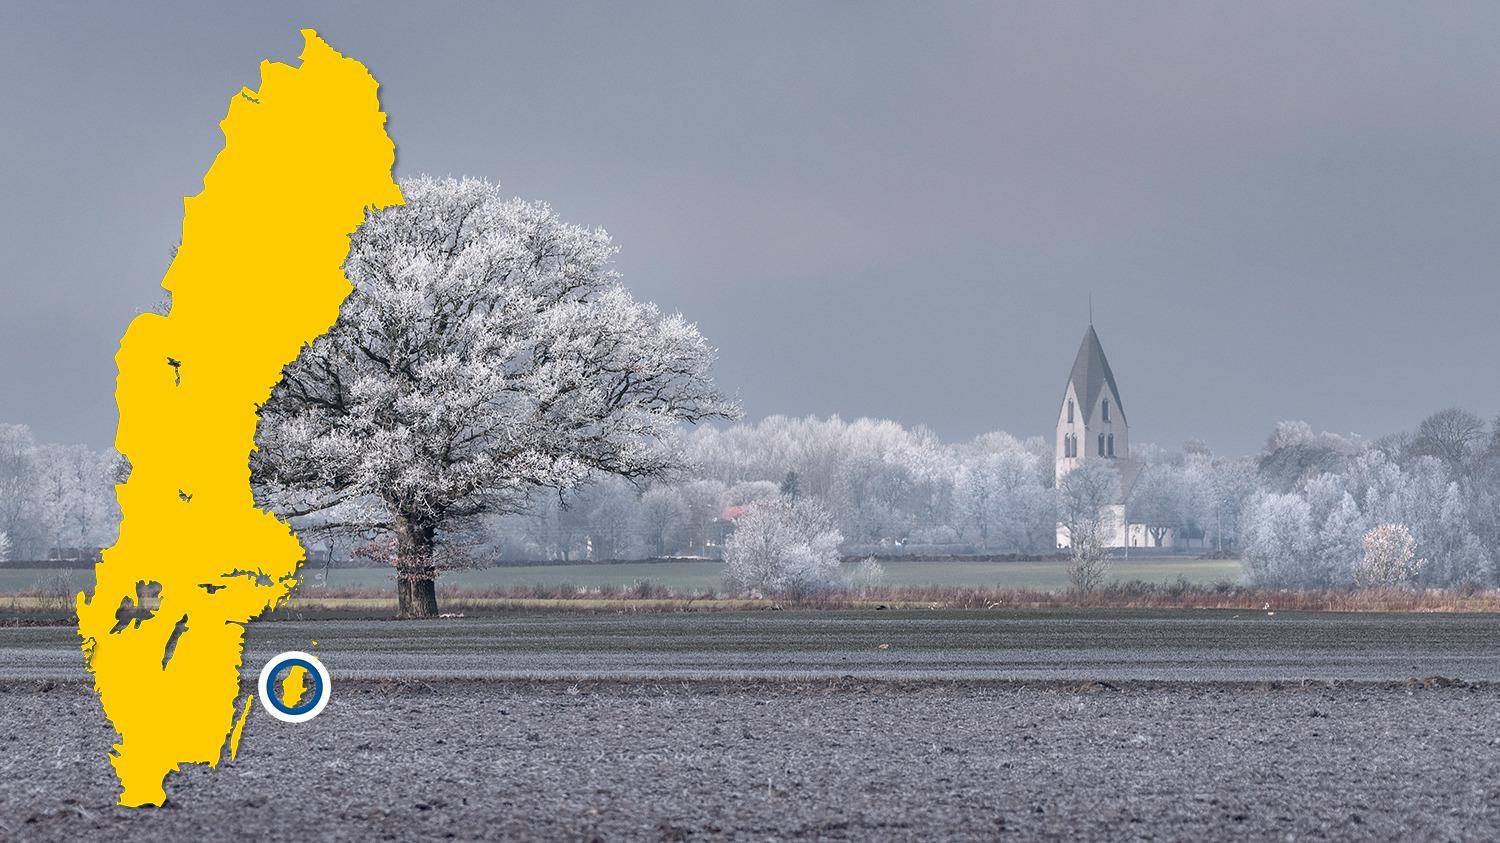 Im Hintergrund eines Feldes ist eine weiße Kirche zu sehen. Die Bäume sind mit Frost bedeckt. Es gibt eine gelbe Schwedenkarte mit einem blauen Punkt, der Mästerby markiert.